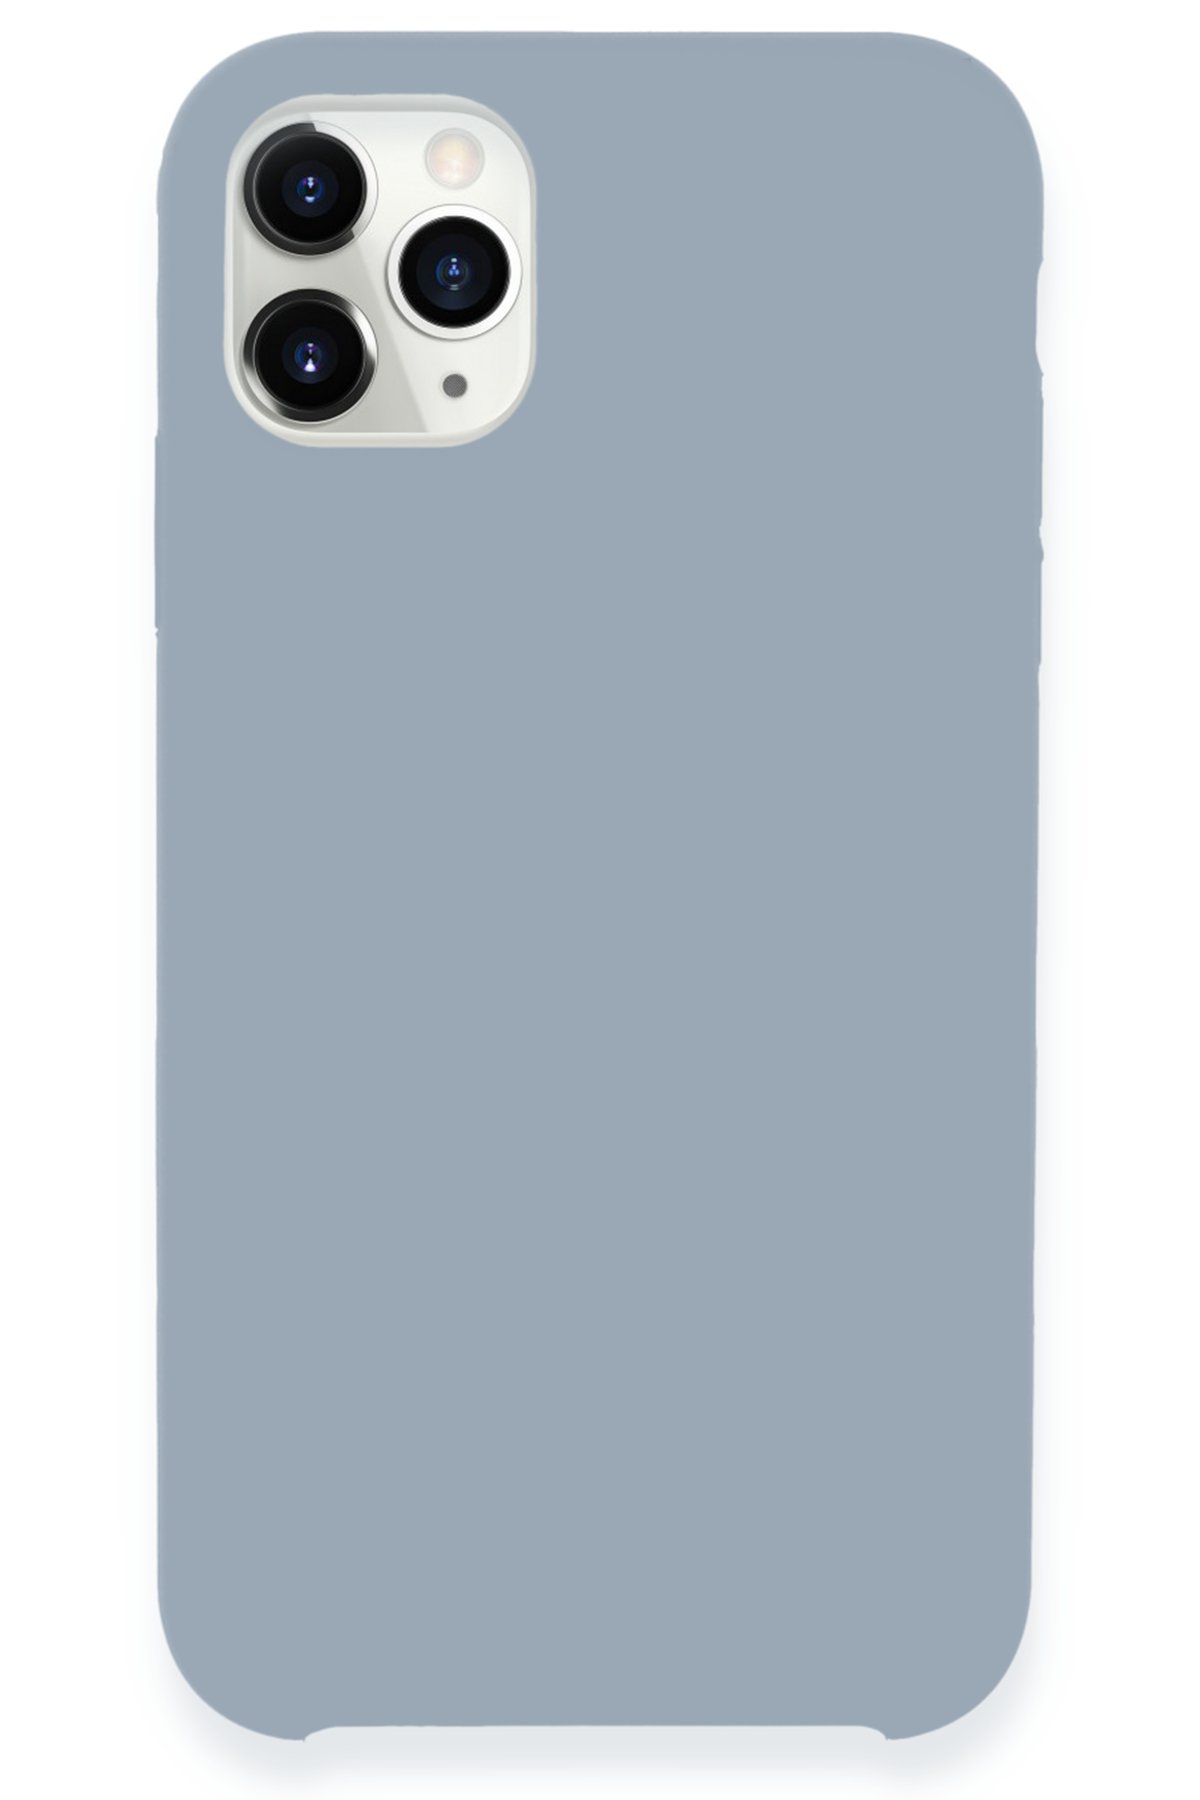 Newface iPhone 11 Pro Max Kılıf Lansman Legant Silikon - Açık Pembe